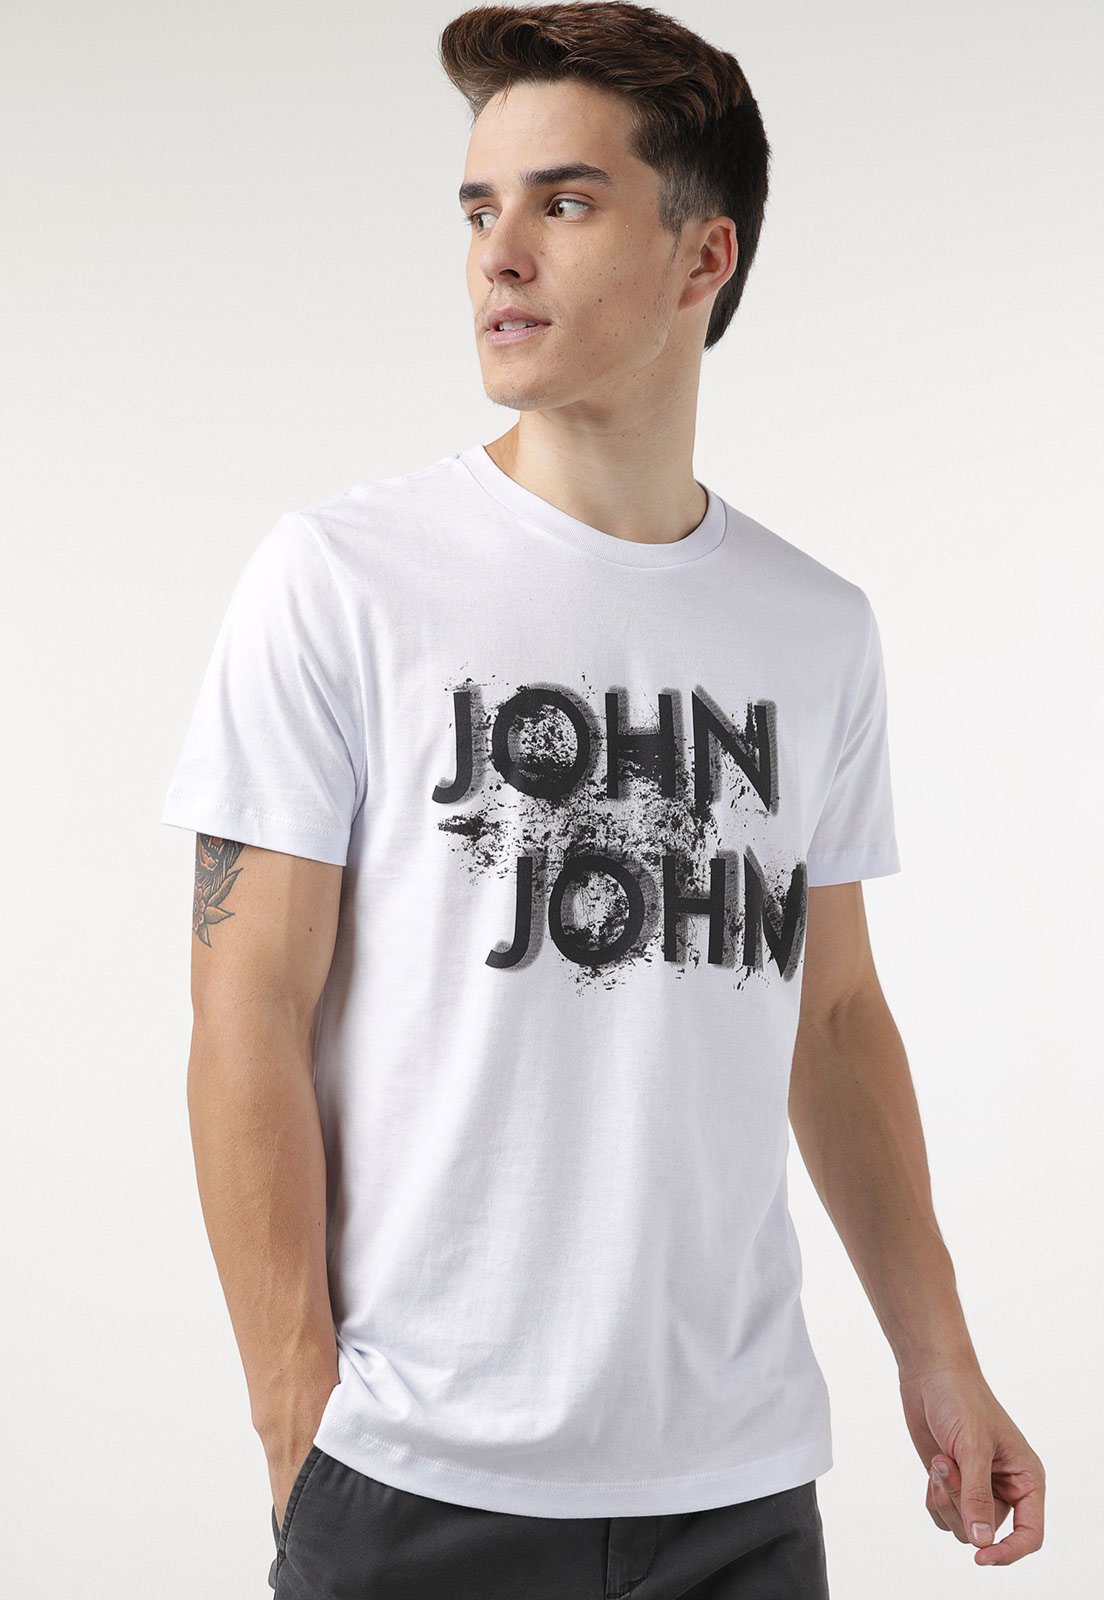 Camiseta john john  Camiseta, John john